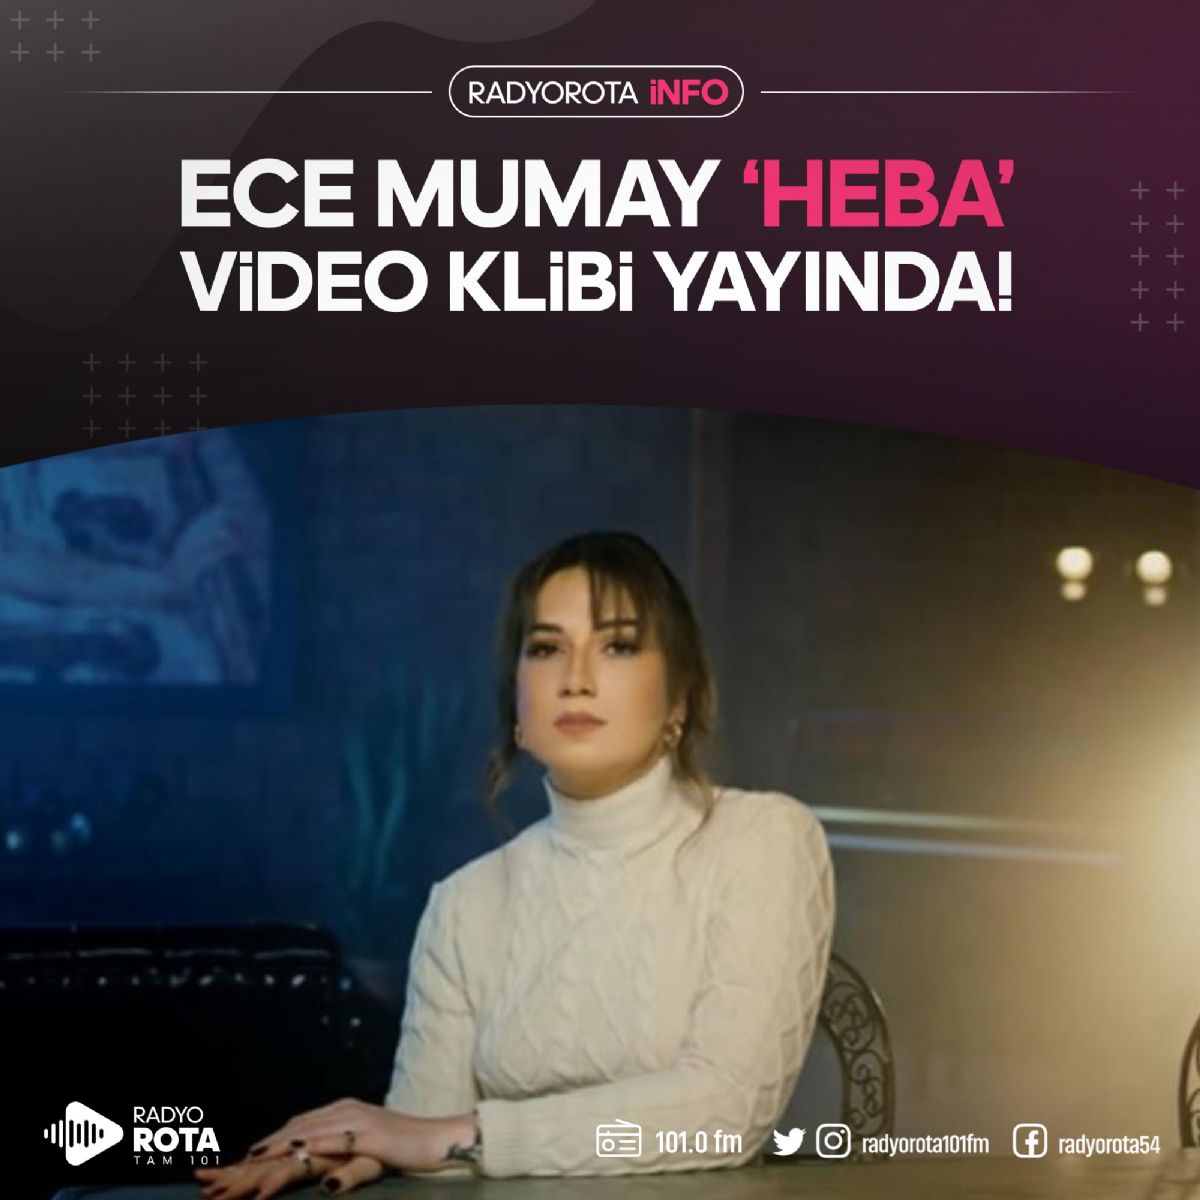 Ece Mumay'ın Yeni Şarkısı 'HEBA' Video Klibi Yayında!